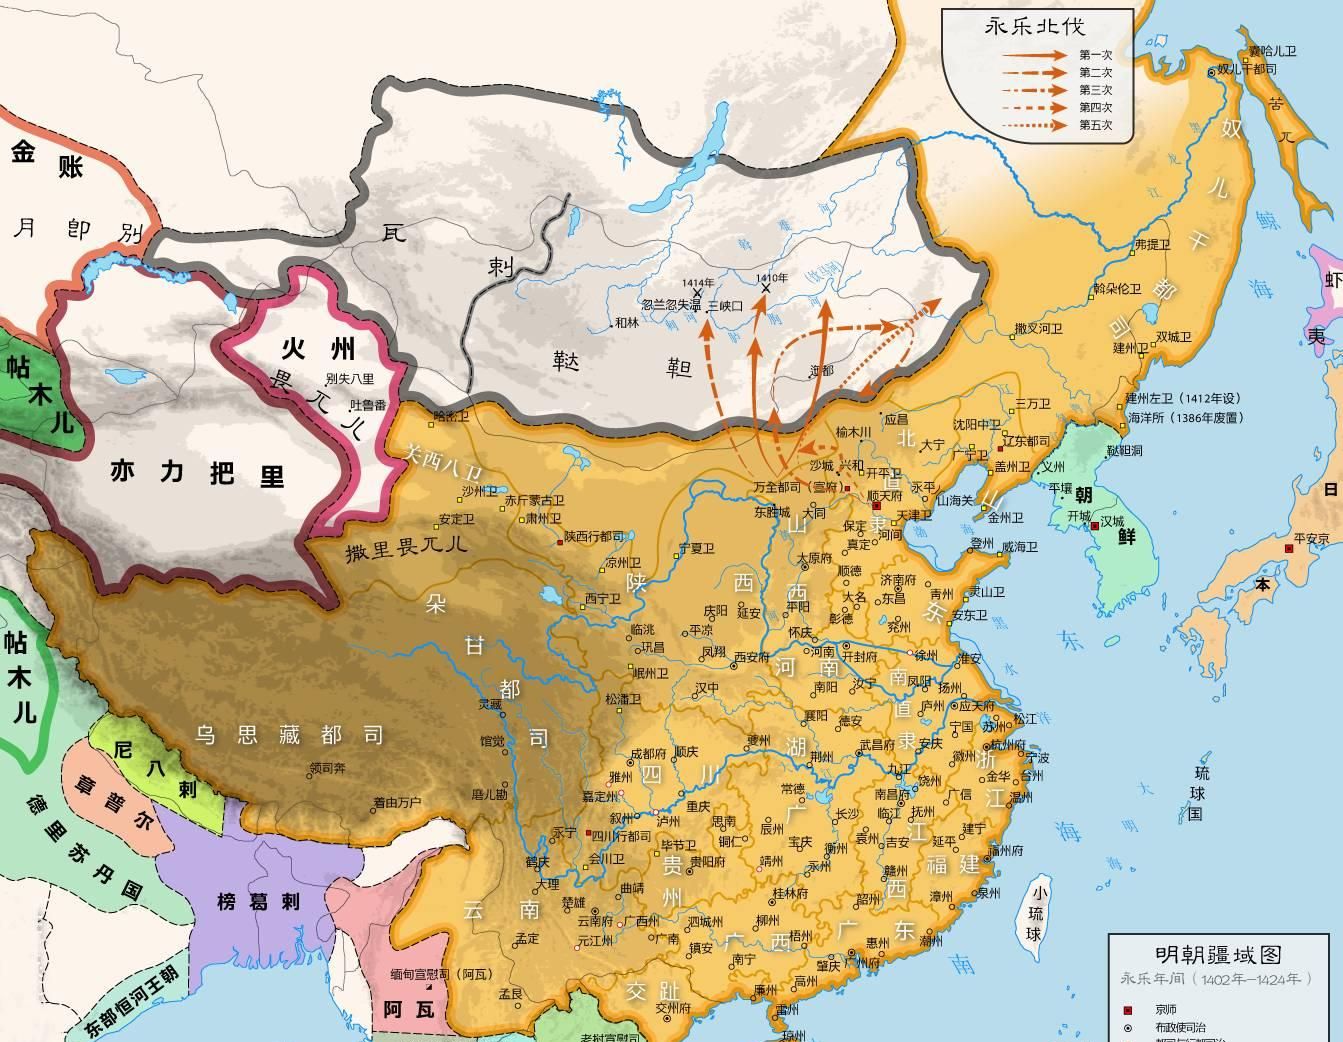 自清朝起到新中国成立时中国丢失了多少领土_百度知道